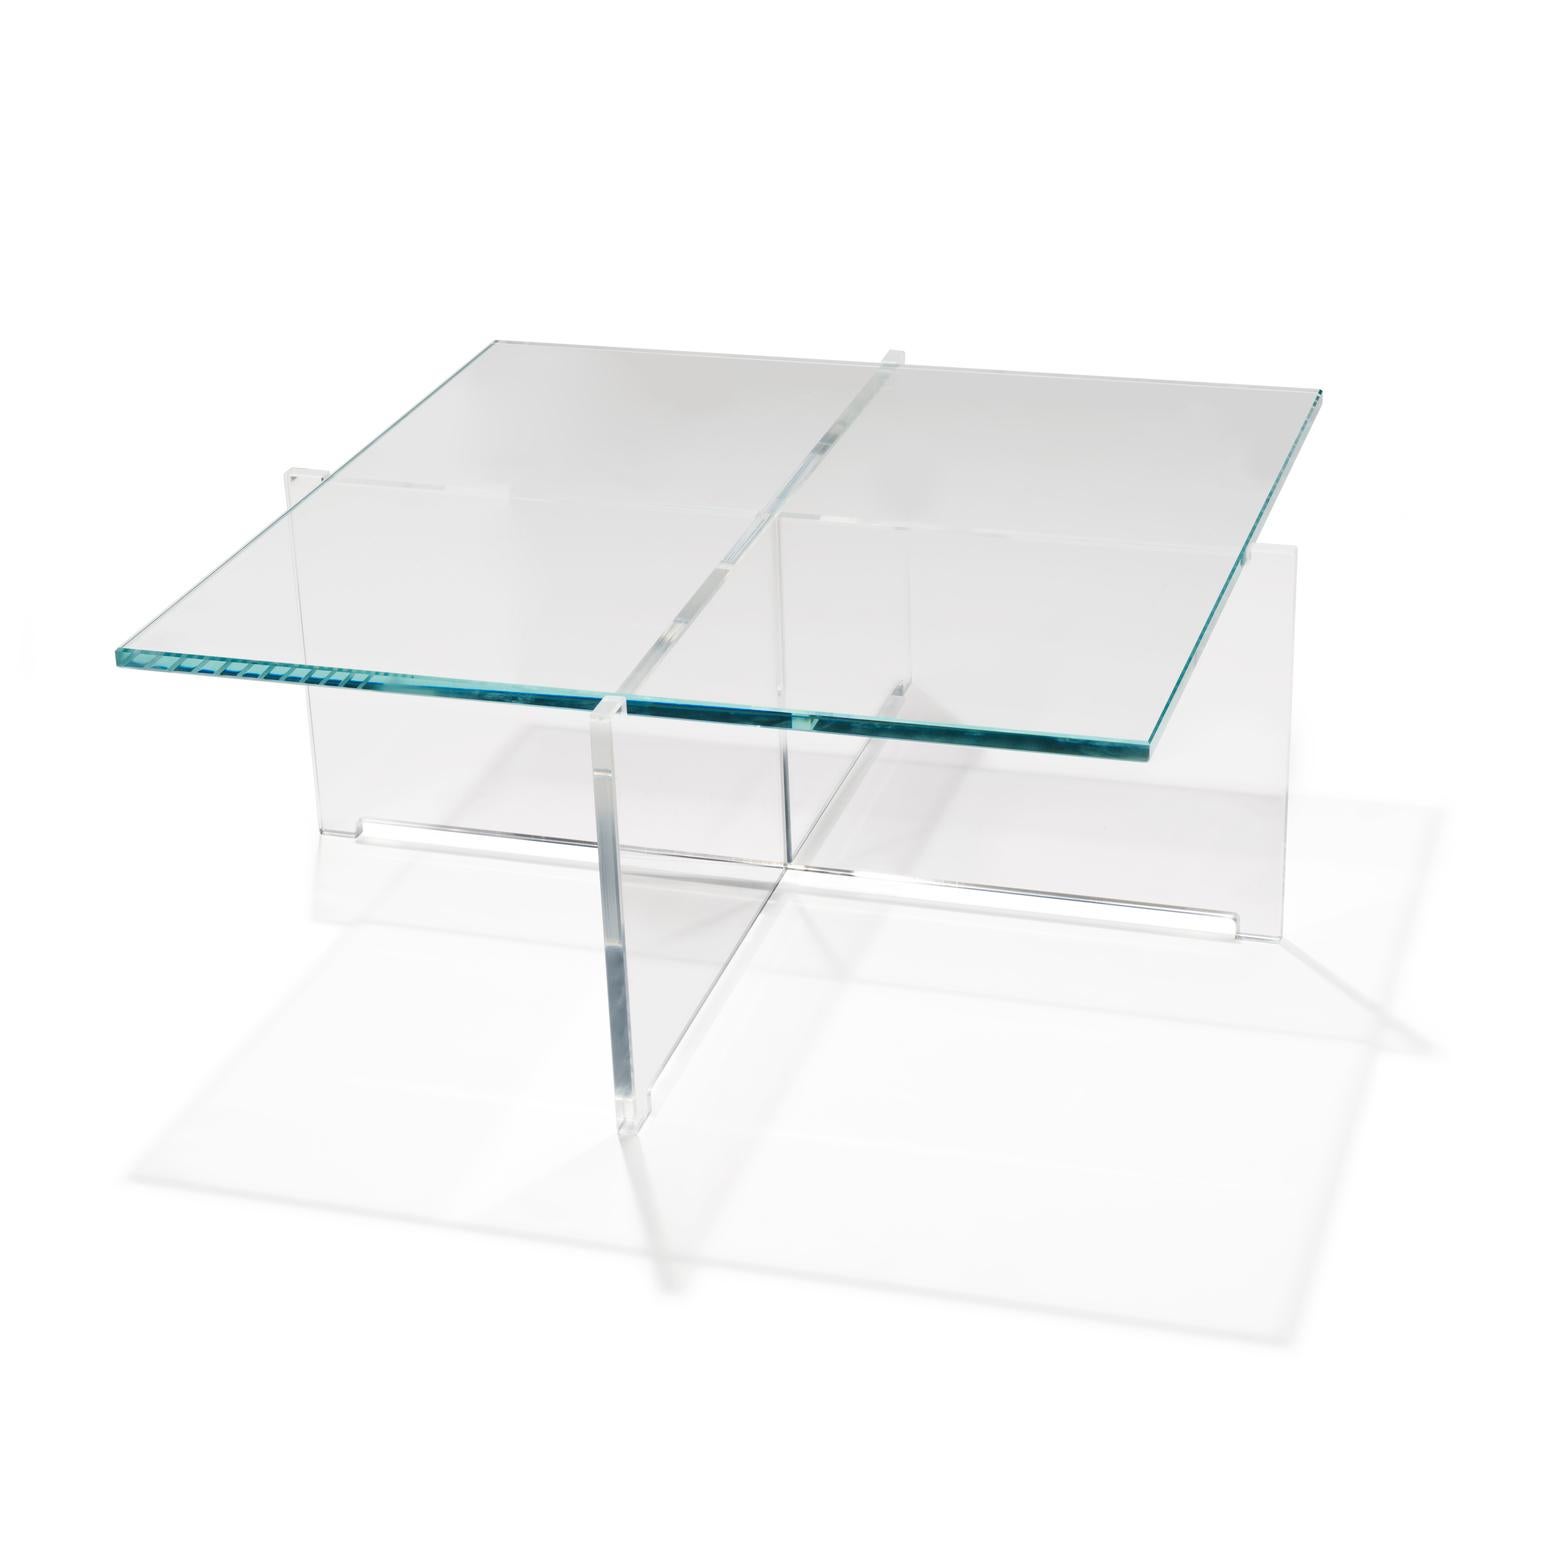 Tisch, entworfen von Bodil Kjær im Jahr 1959. 

Der niedrige CrossPlex-Tisch wurde als Teil von Kjærs zukunftsweisendem funktionalen Möbelprogramm Elements of Architecture entwickelt, das zwischen 1955 und 1963 entstand. Im Laufe der Jahrzehnte hat